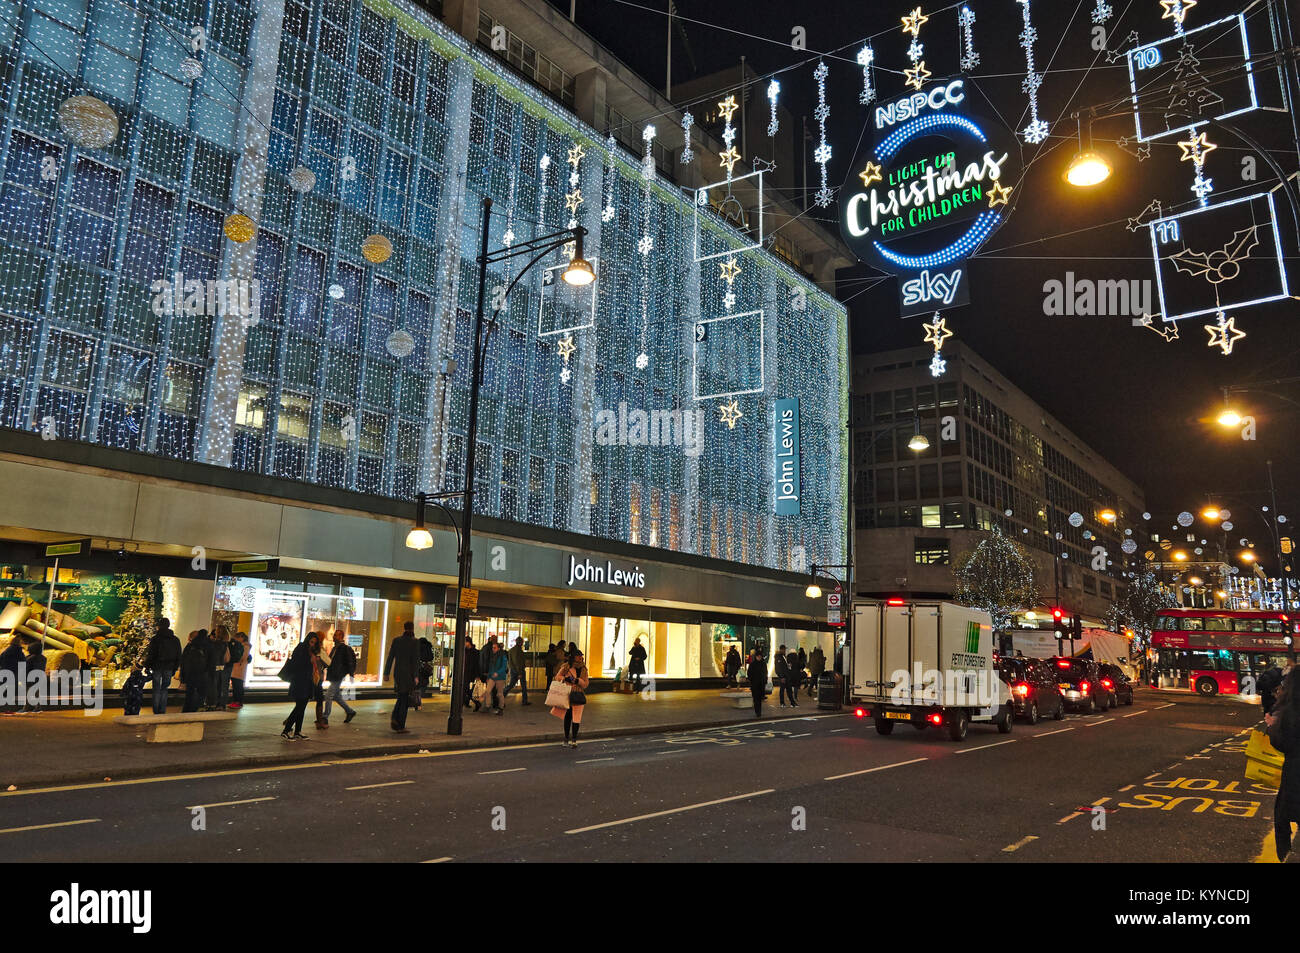 Oxford street pendant la période de Noël à Londres. Angleterre, Royaume-Uni Banque D'Images